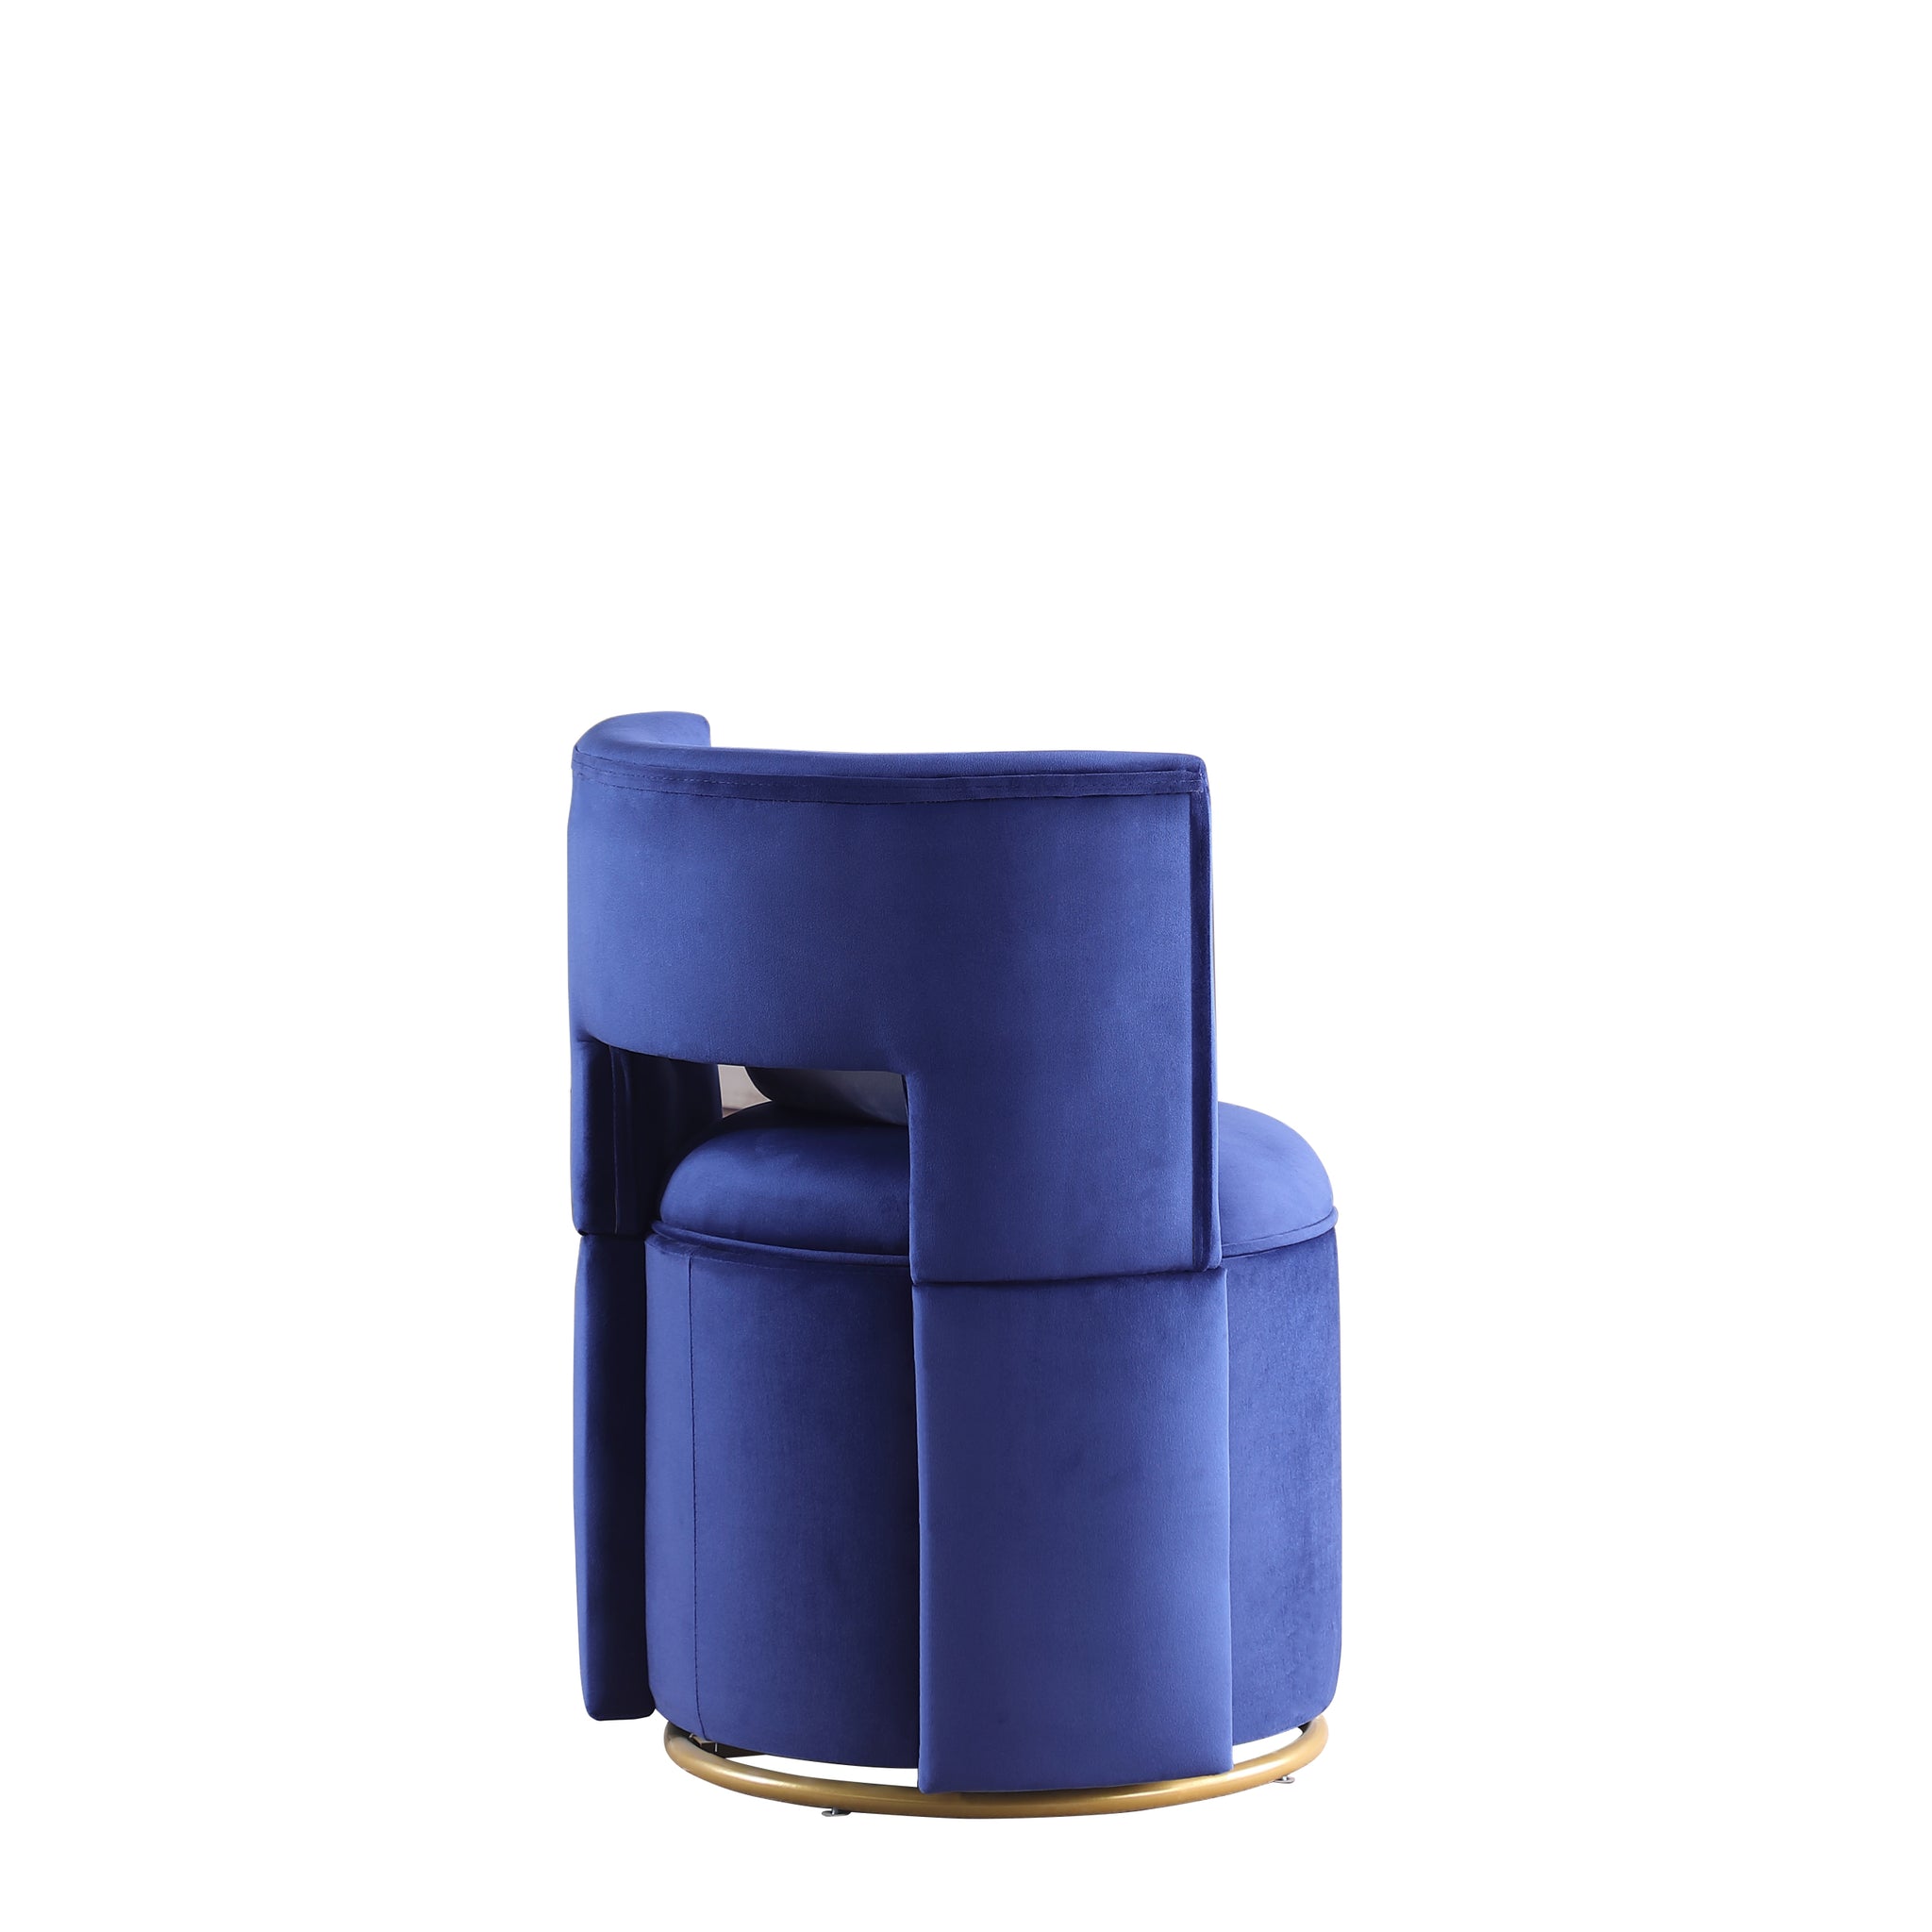 360 Swivel Accent Chair with Storage Function, Velvet blue-velvet